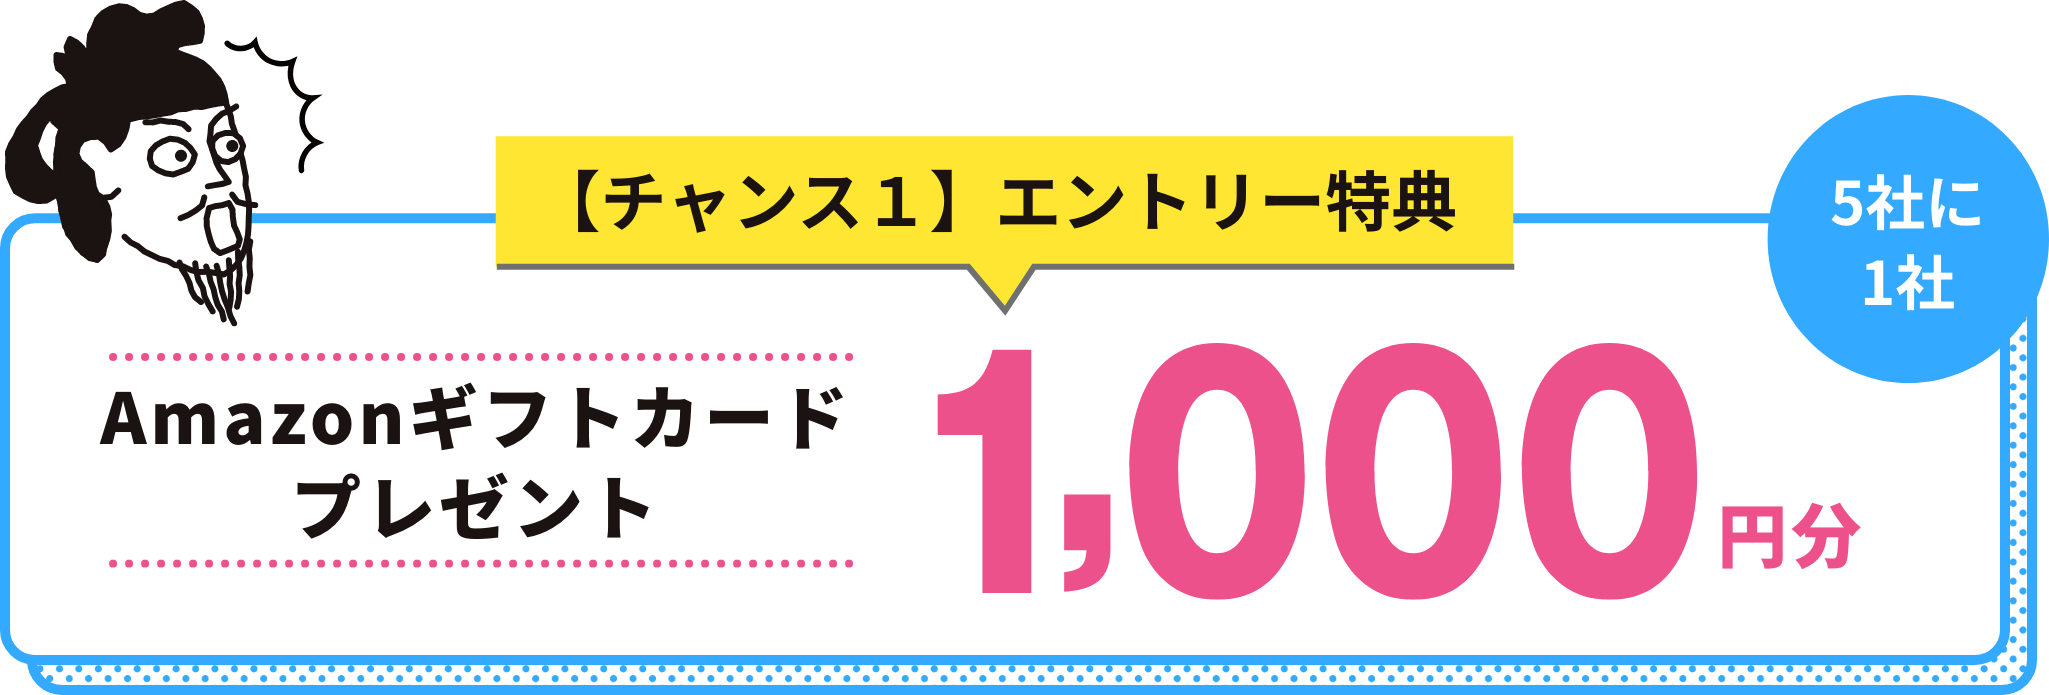 【チャンス１】エントリー特典 5社に1社 Amazonギフトカード 1000円分プレゼント